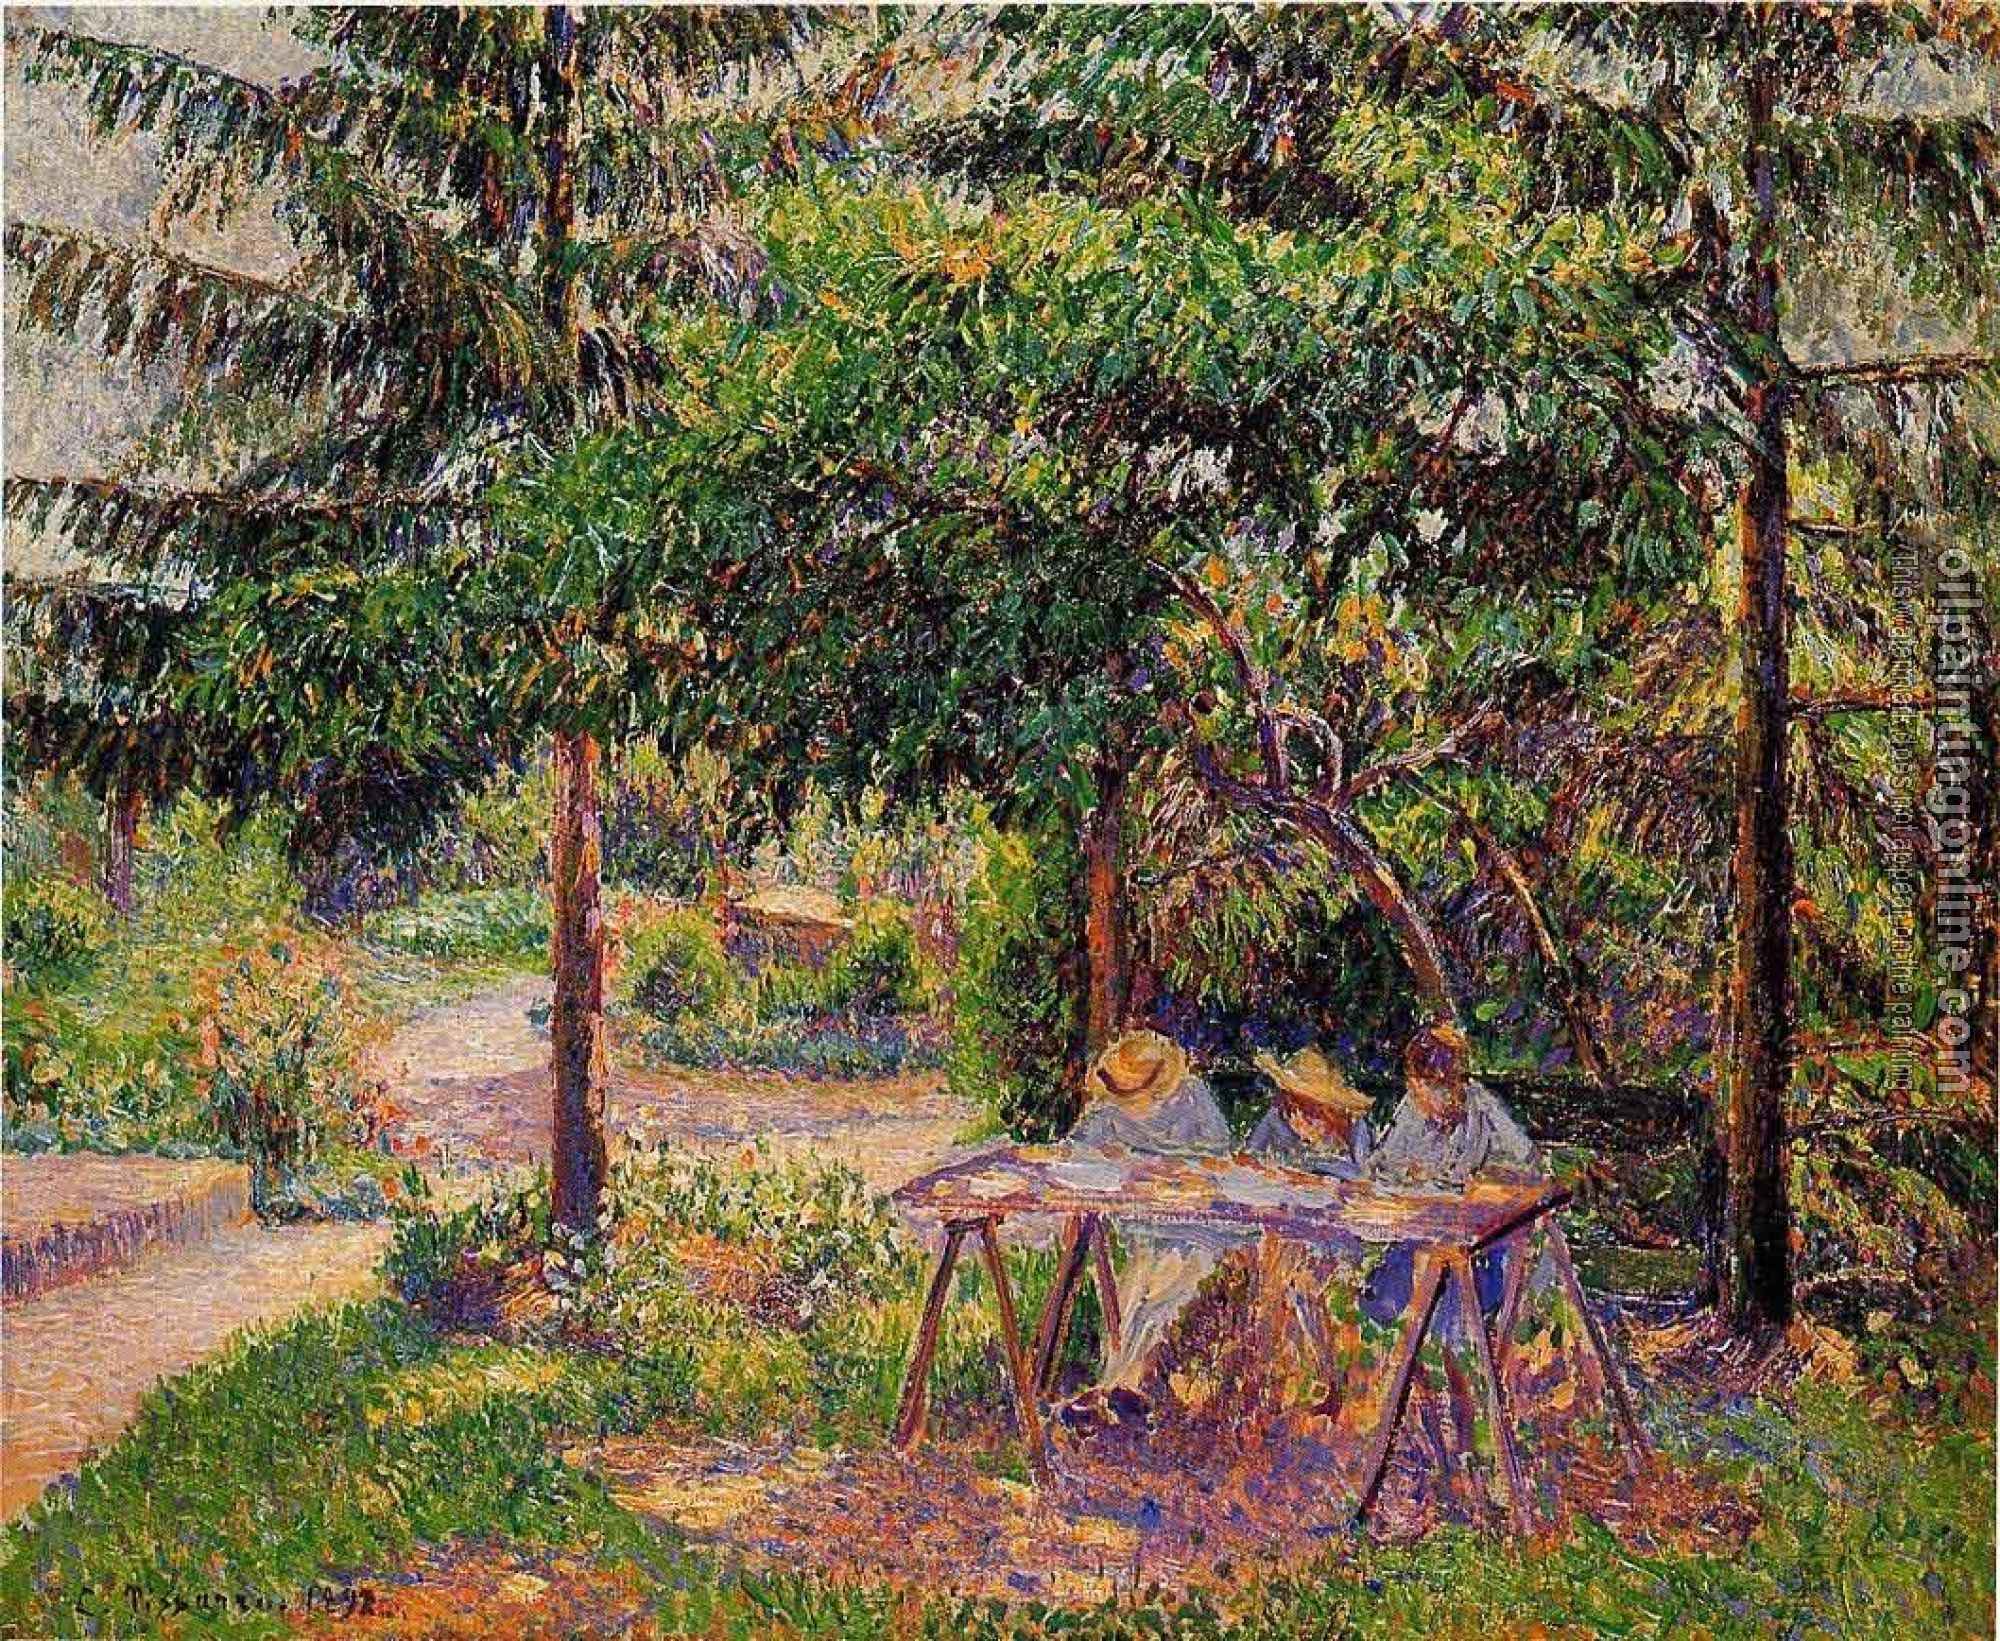 Pissarro, Camille - Children in a Garden at Eragny